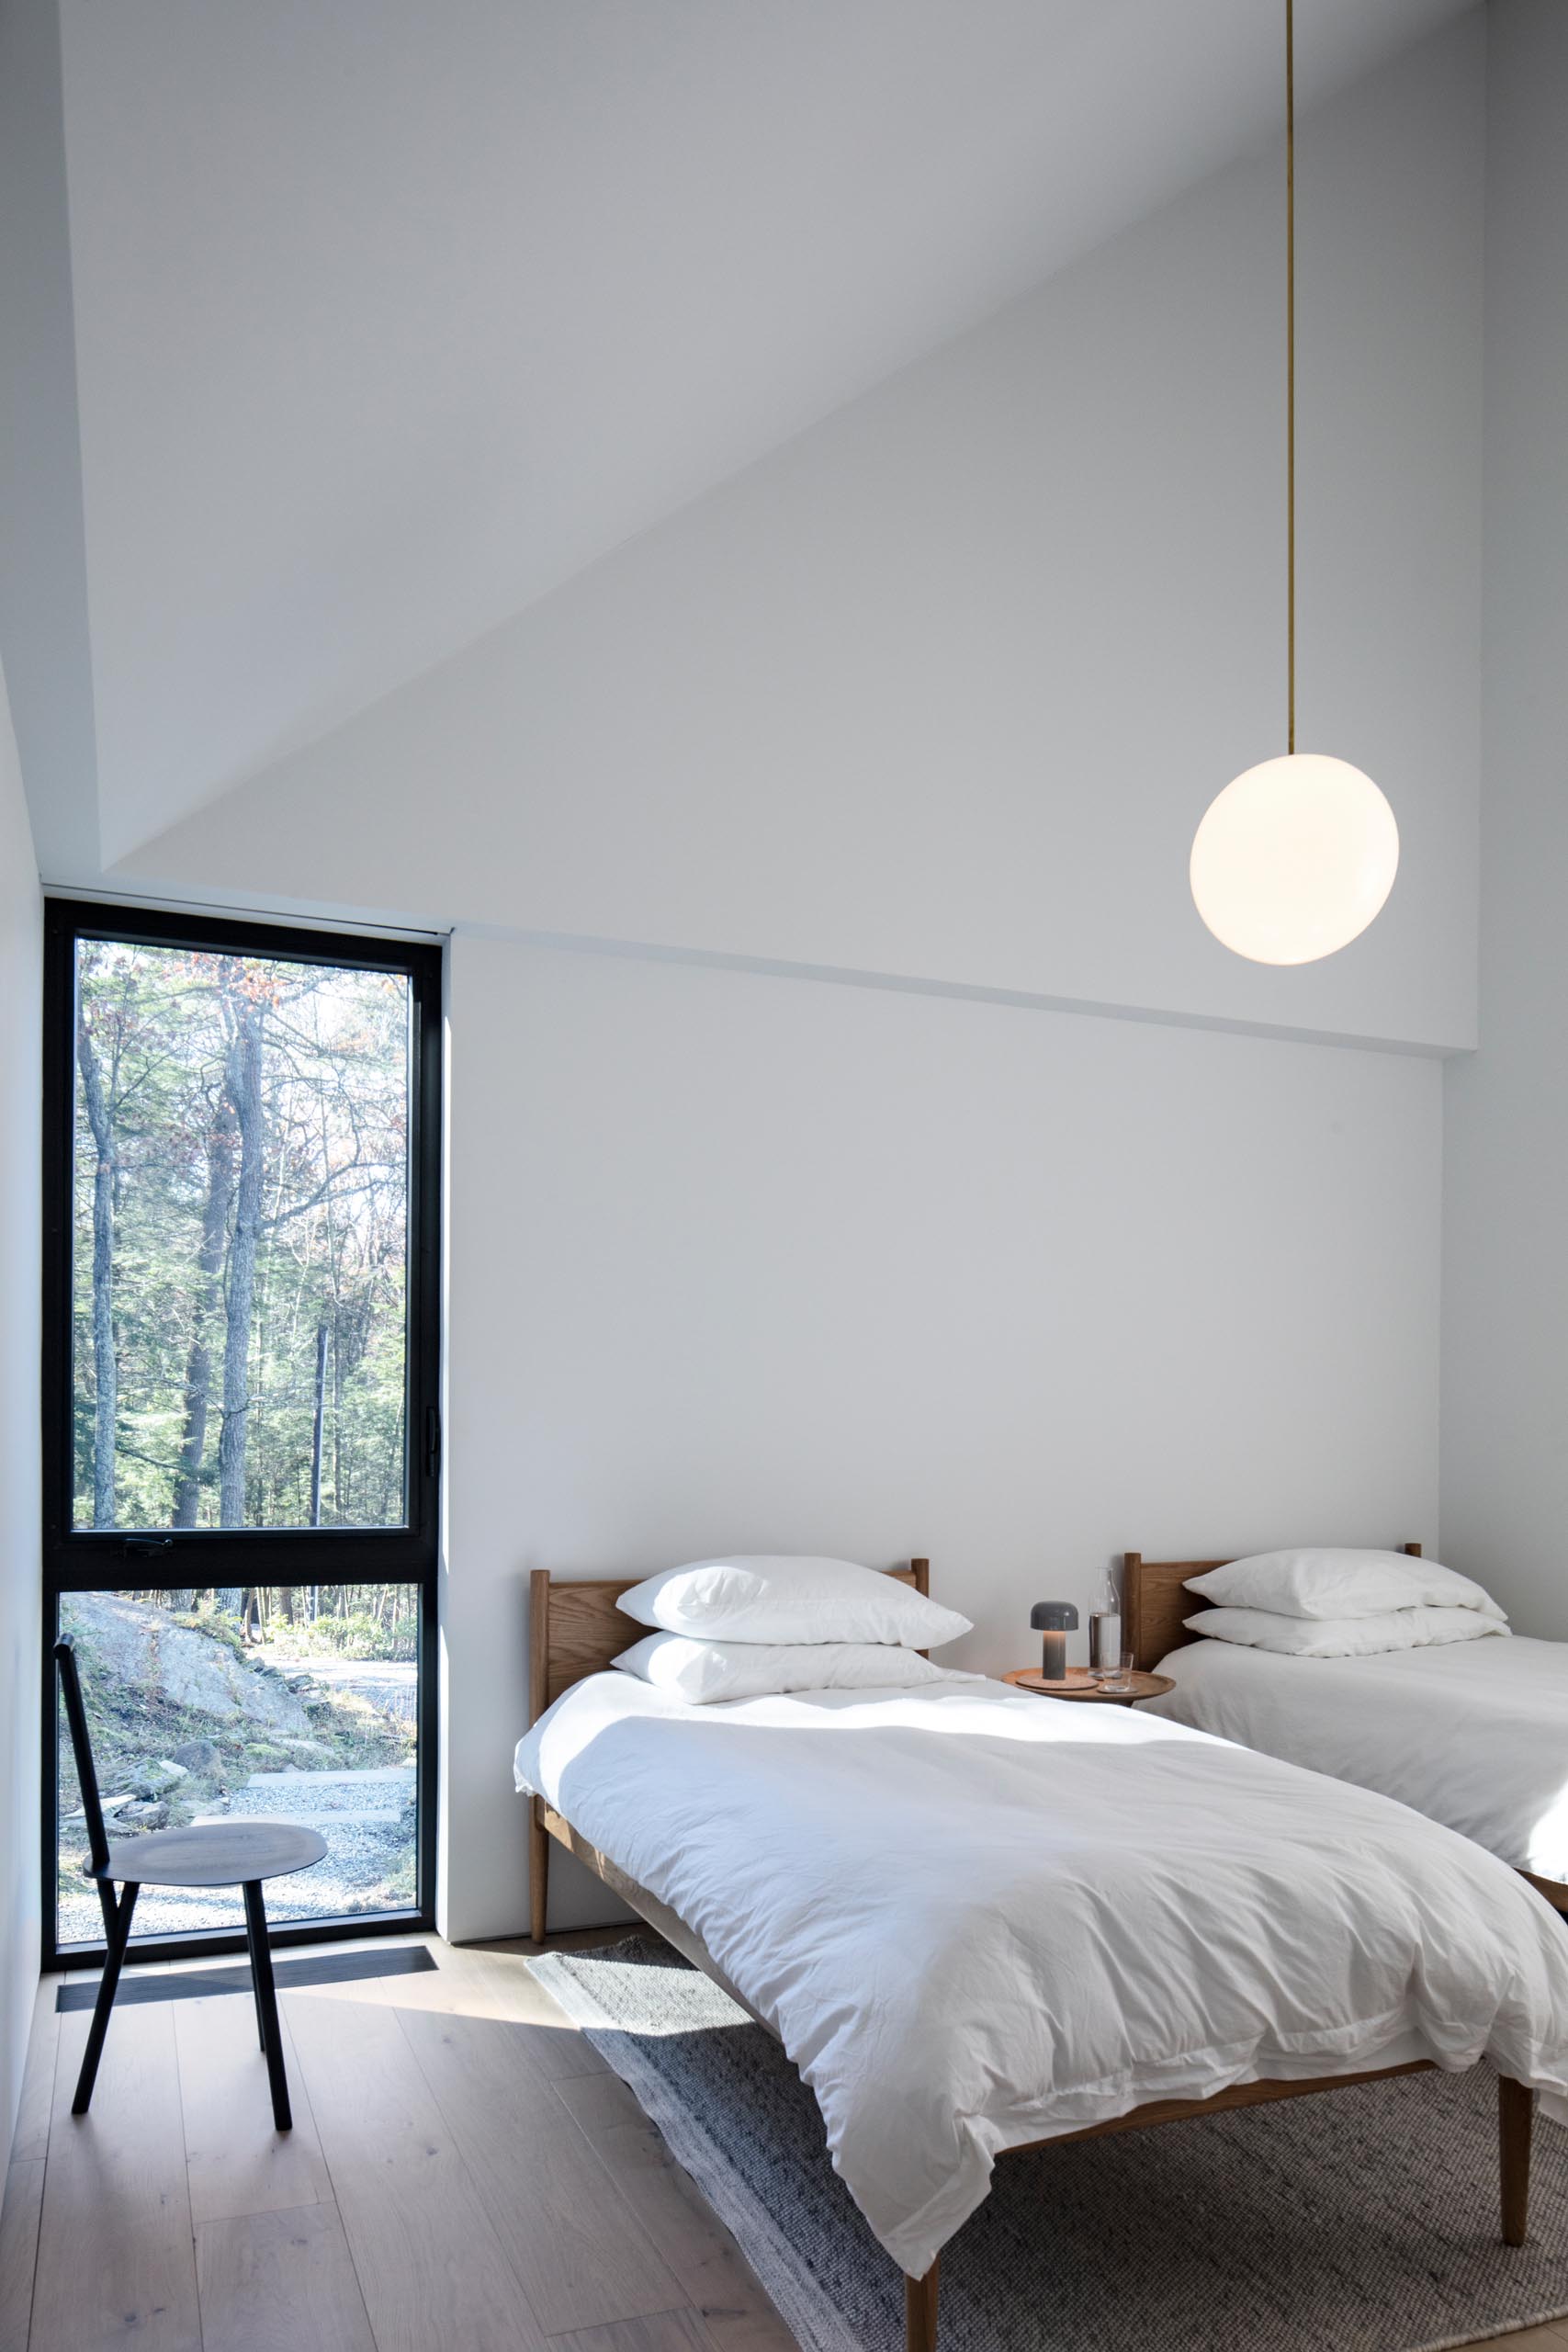 Гостевая спальня в стиле минимализма с двумя кроватями, современным черным стулом, белыми стенами и одним подвесным светильником.